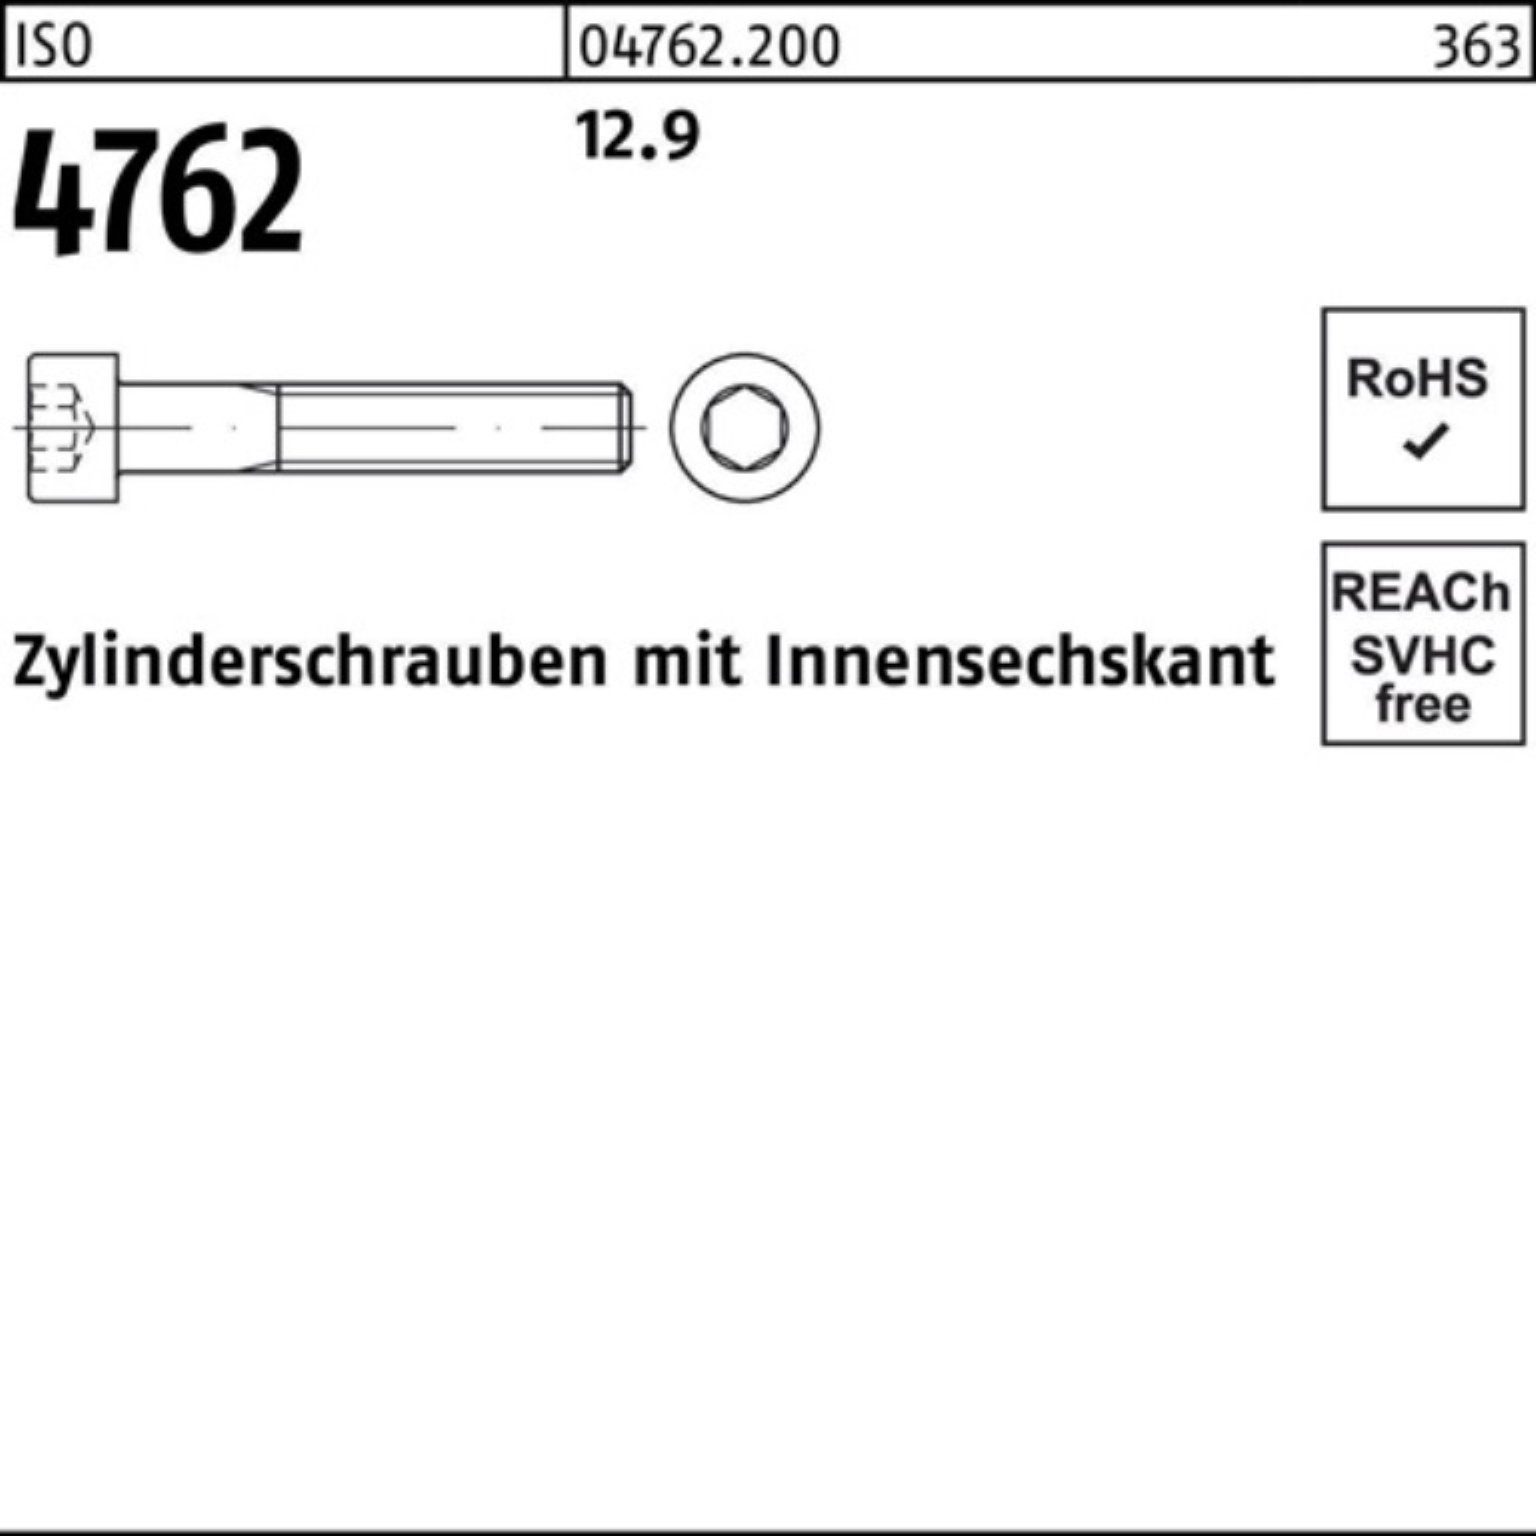 12.9 1 Pack 90 Innen-6kt Zylinderschraube 4762 ISO M30x Reyher I 100er Zylinderschraube Stück